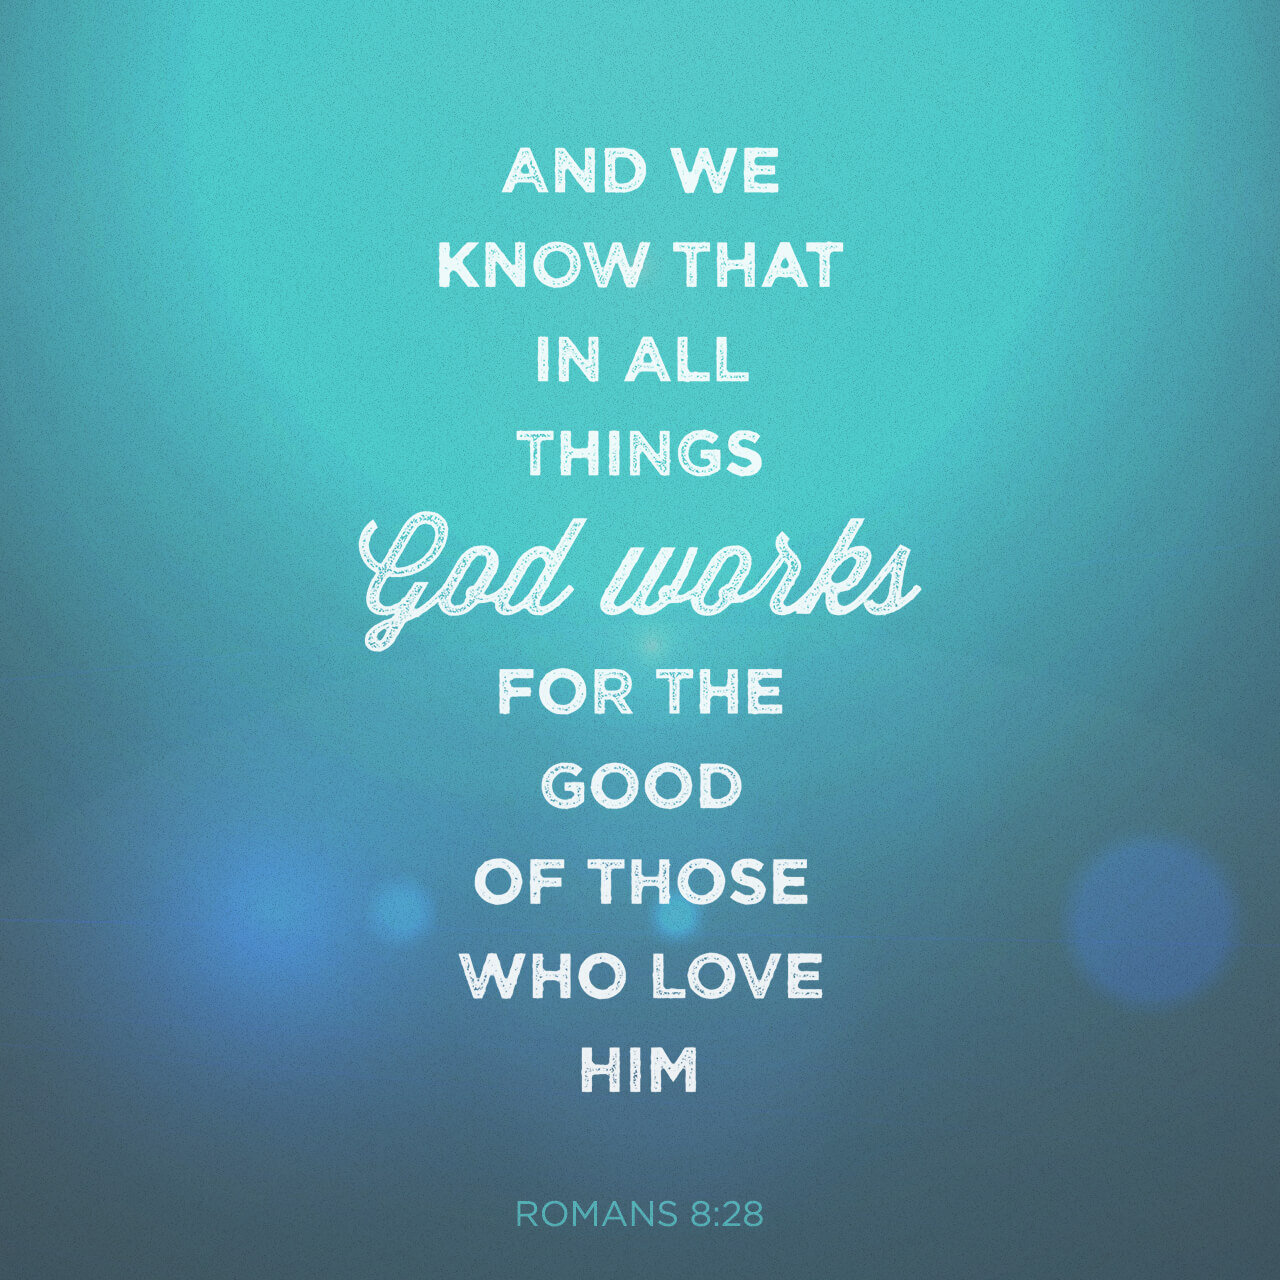 God works for your good - Romans 8:28 — Faith Chapel